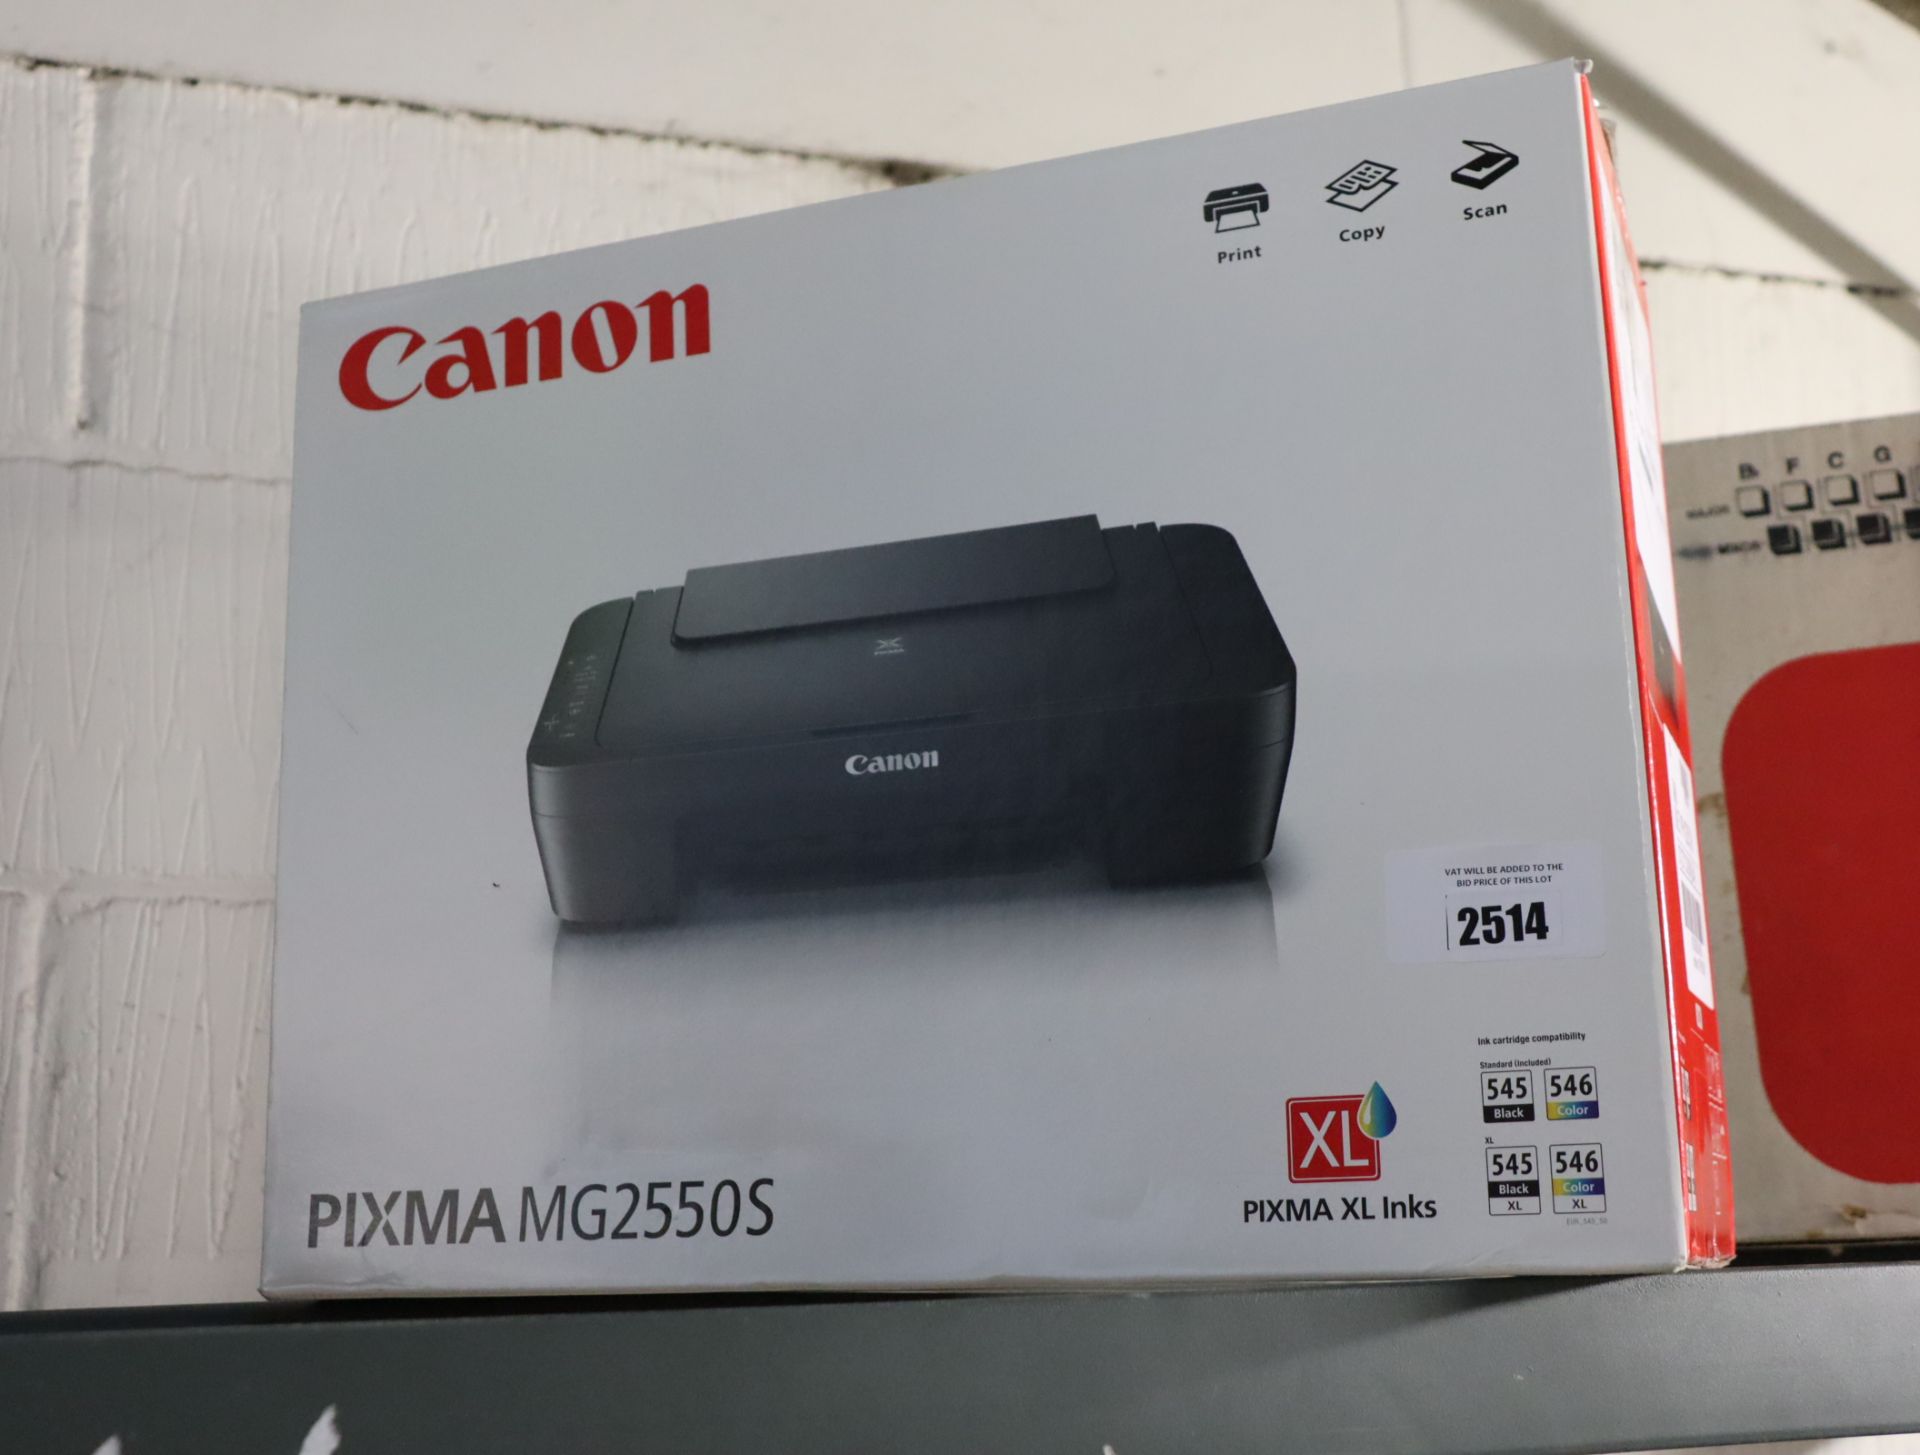 Boxed Canon printer